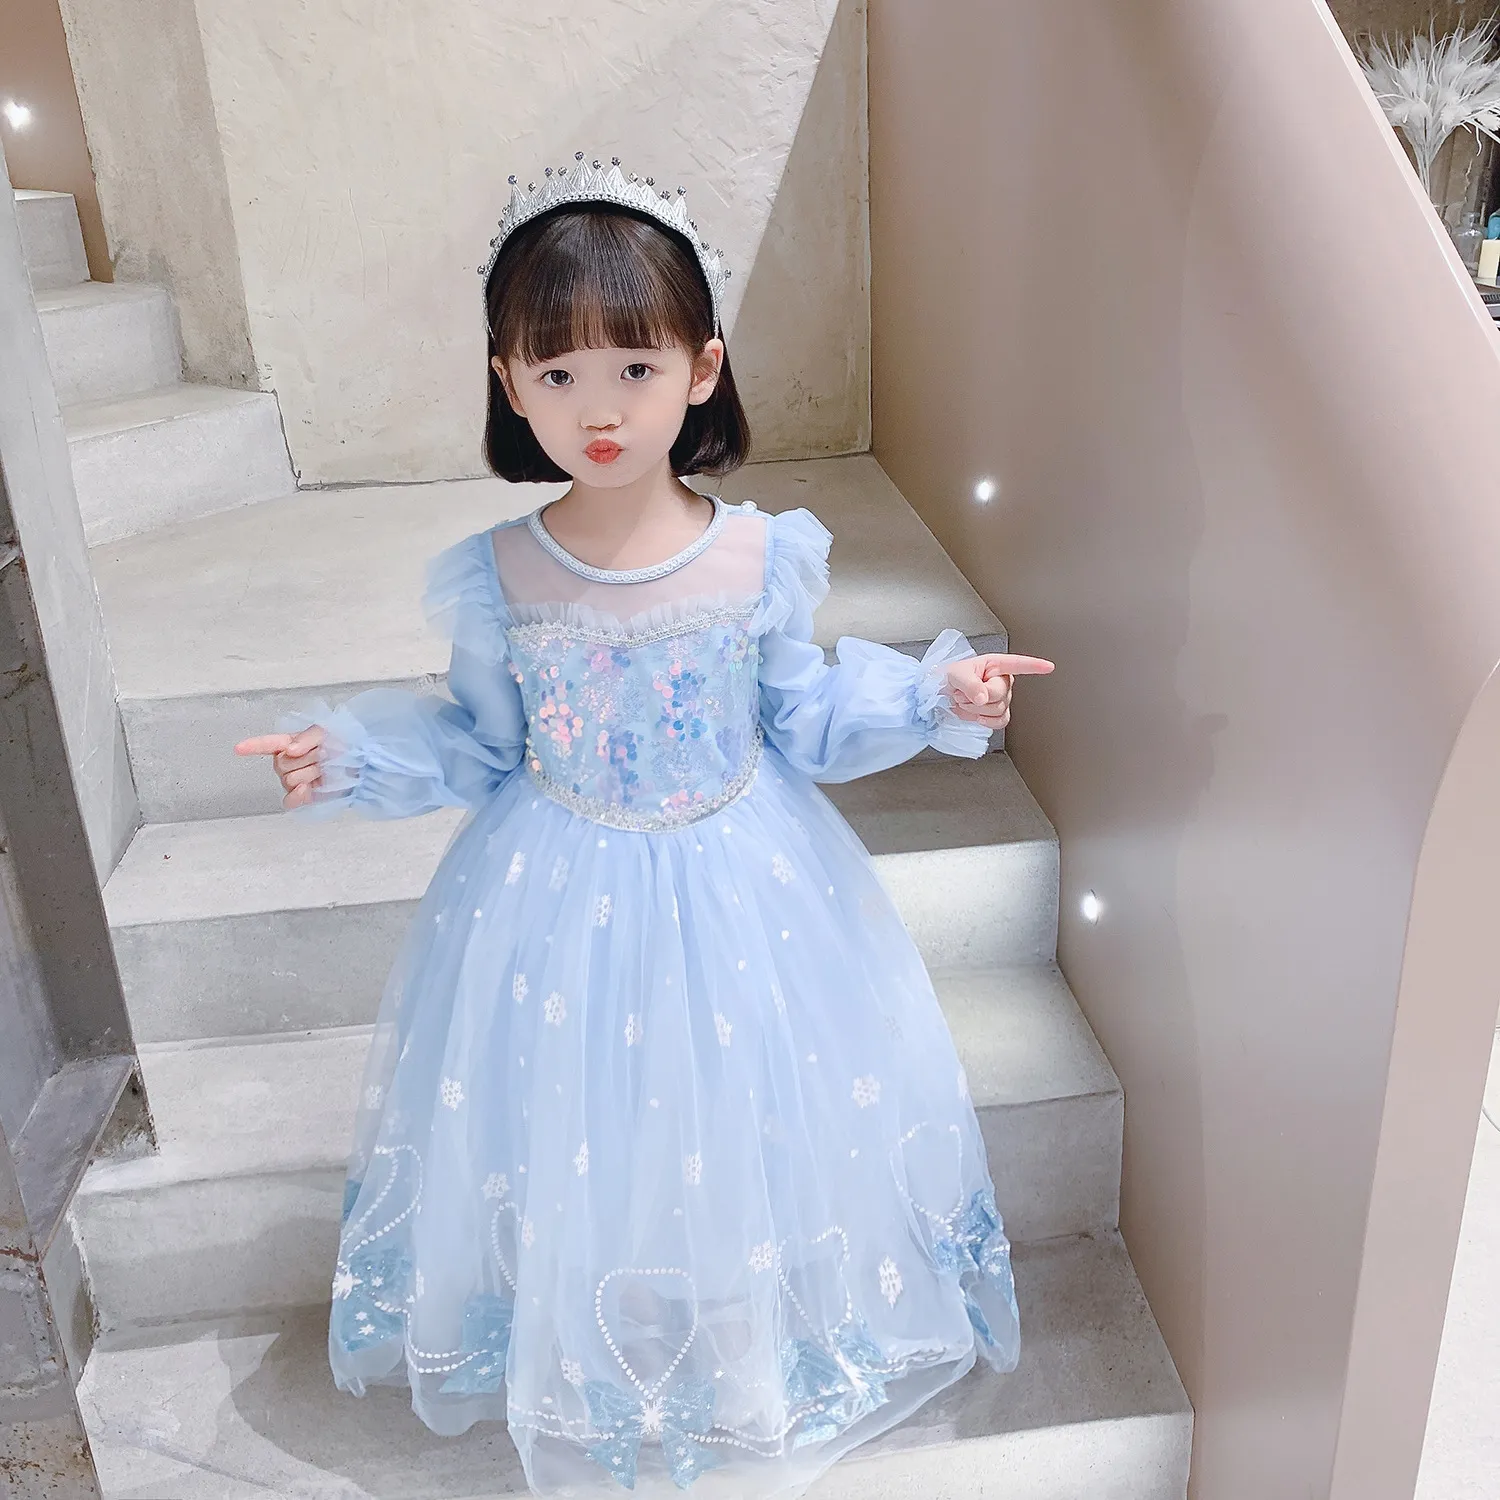 Váy công chúa Elsa màu xanh cho bé gái 3-9 tuổi - Mẫu mới Frozen 2